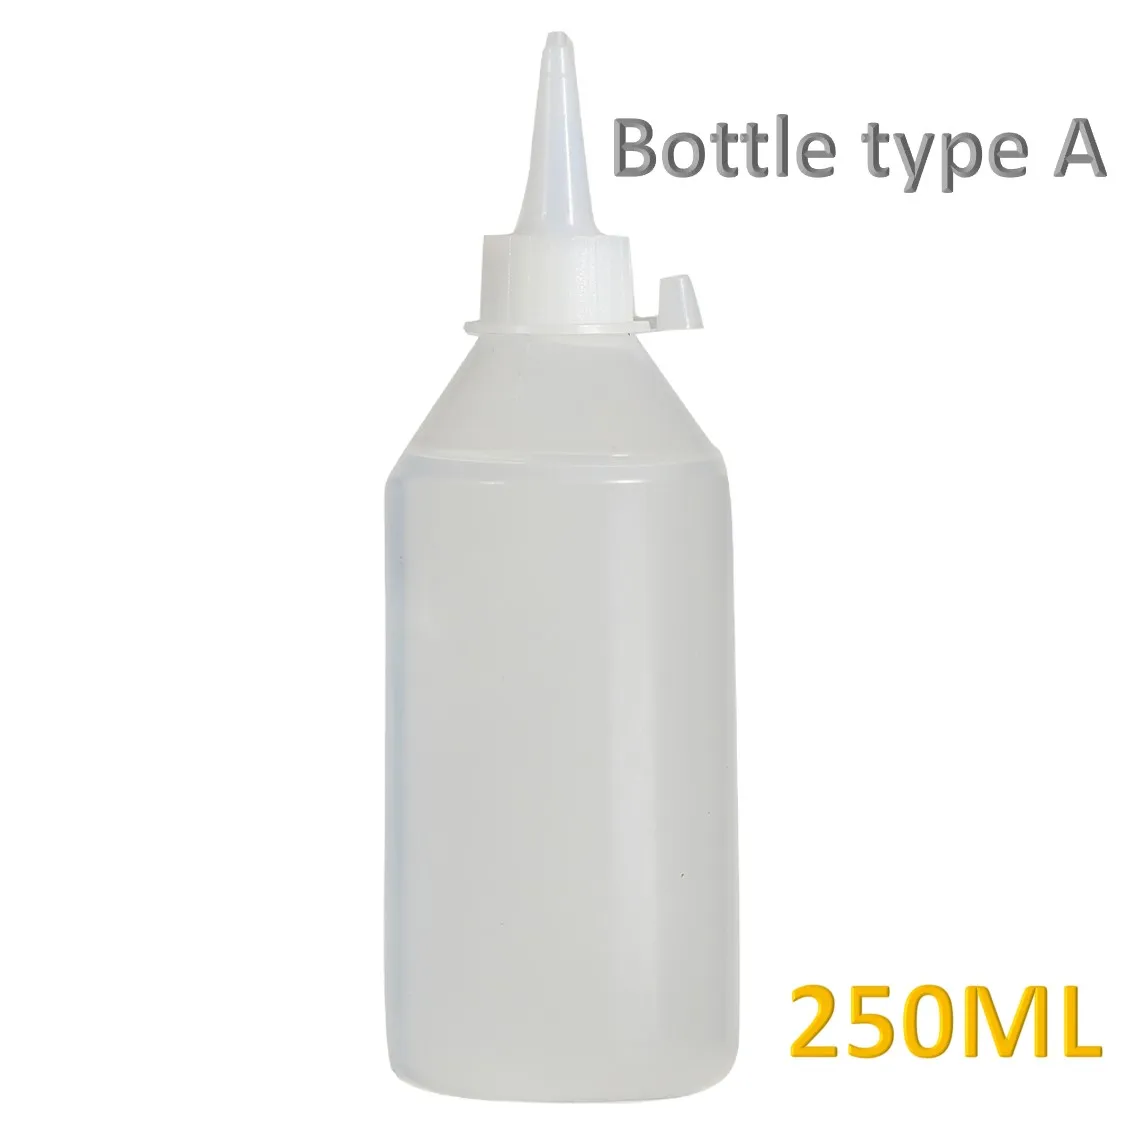 30ML Type-A Silicone Liquid Glue Chinn Yow OEM Adhesive Glue